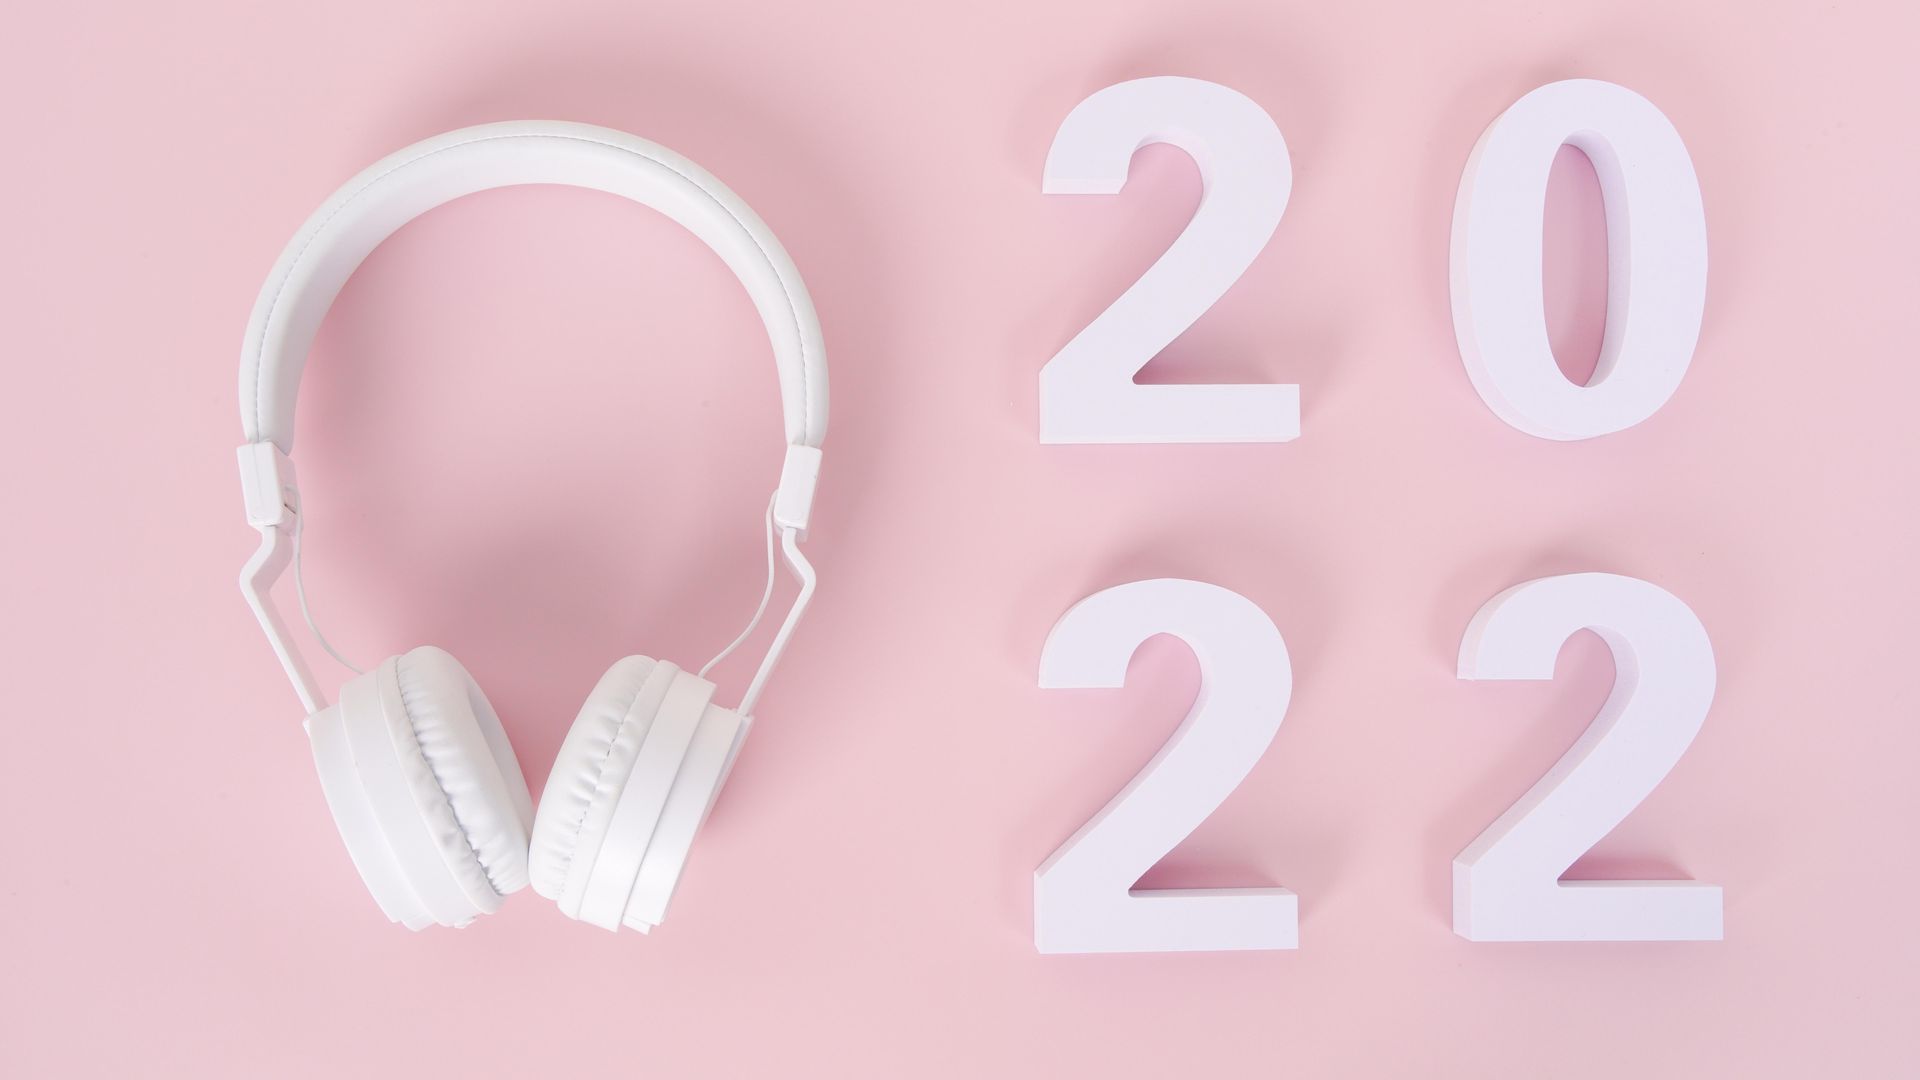 2022又是一个展新的开始 数字粉色背景电脑壁纸